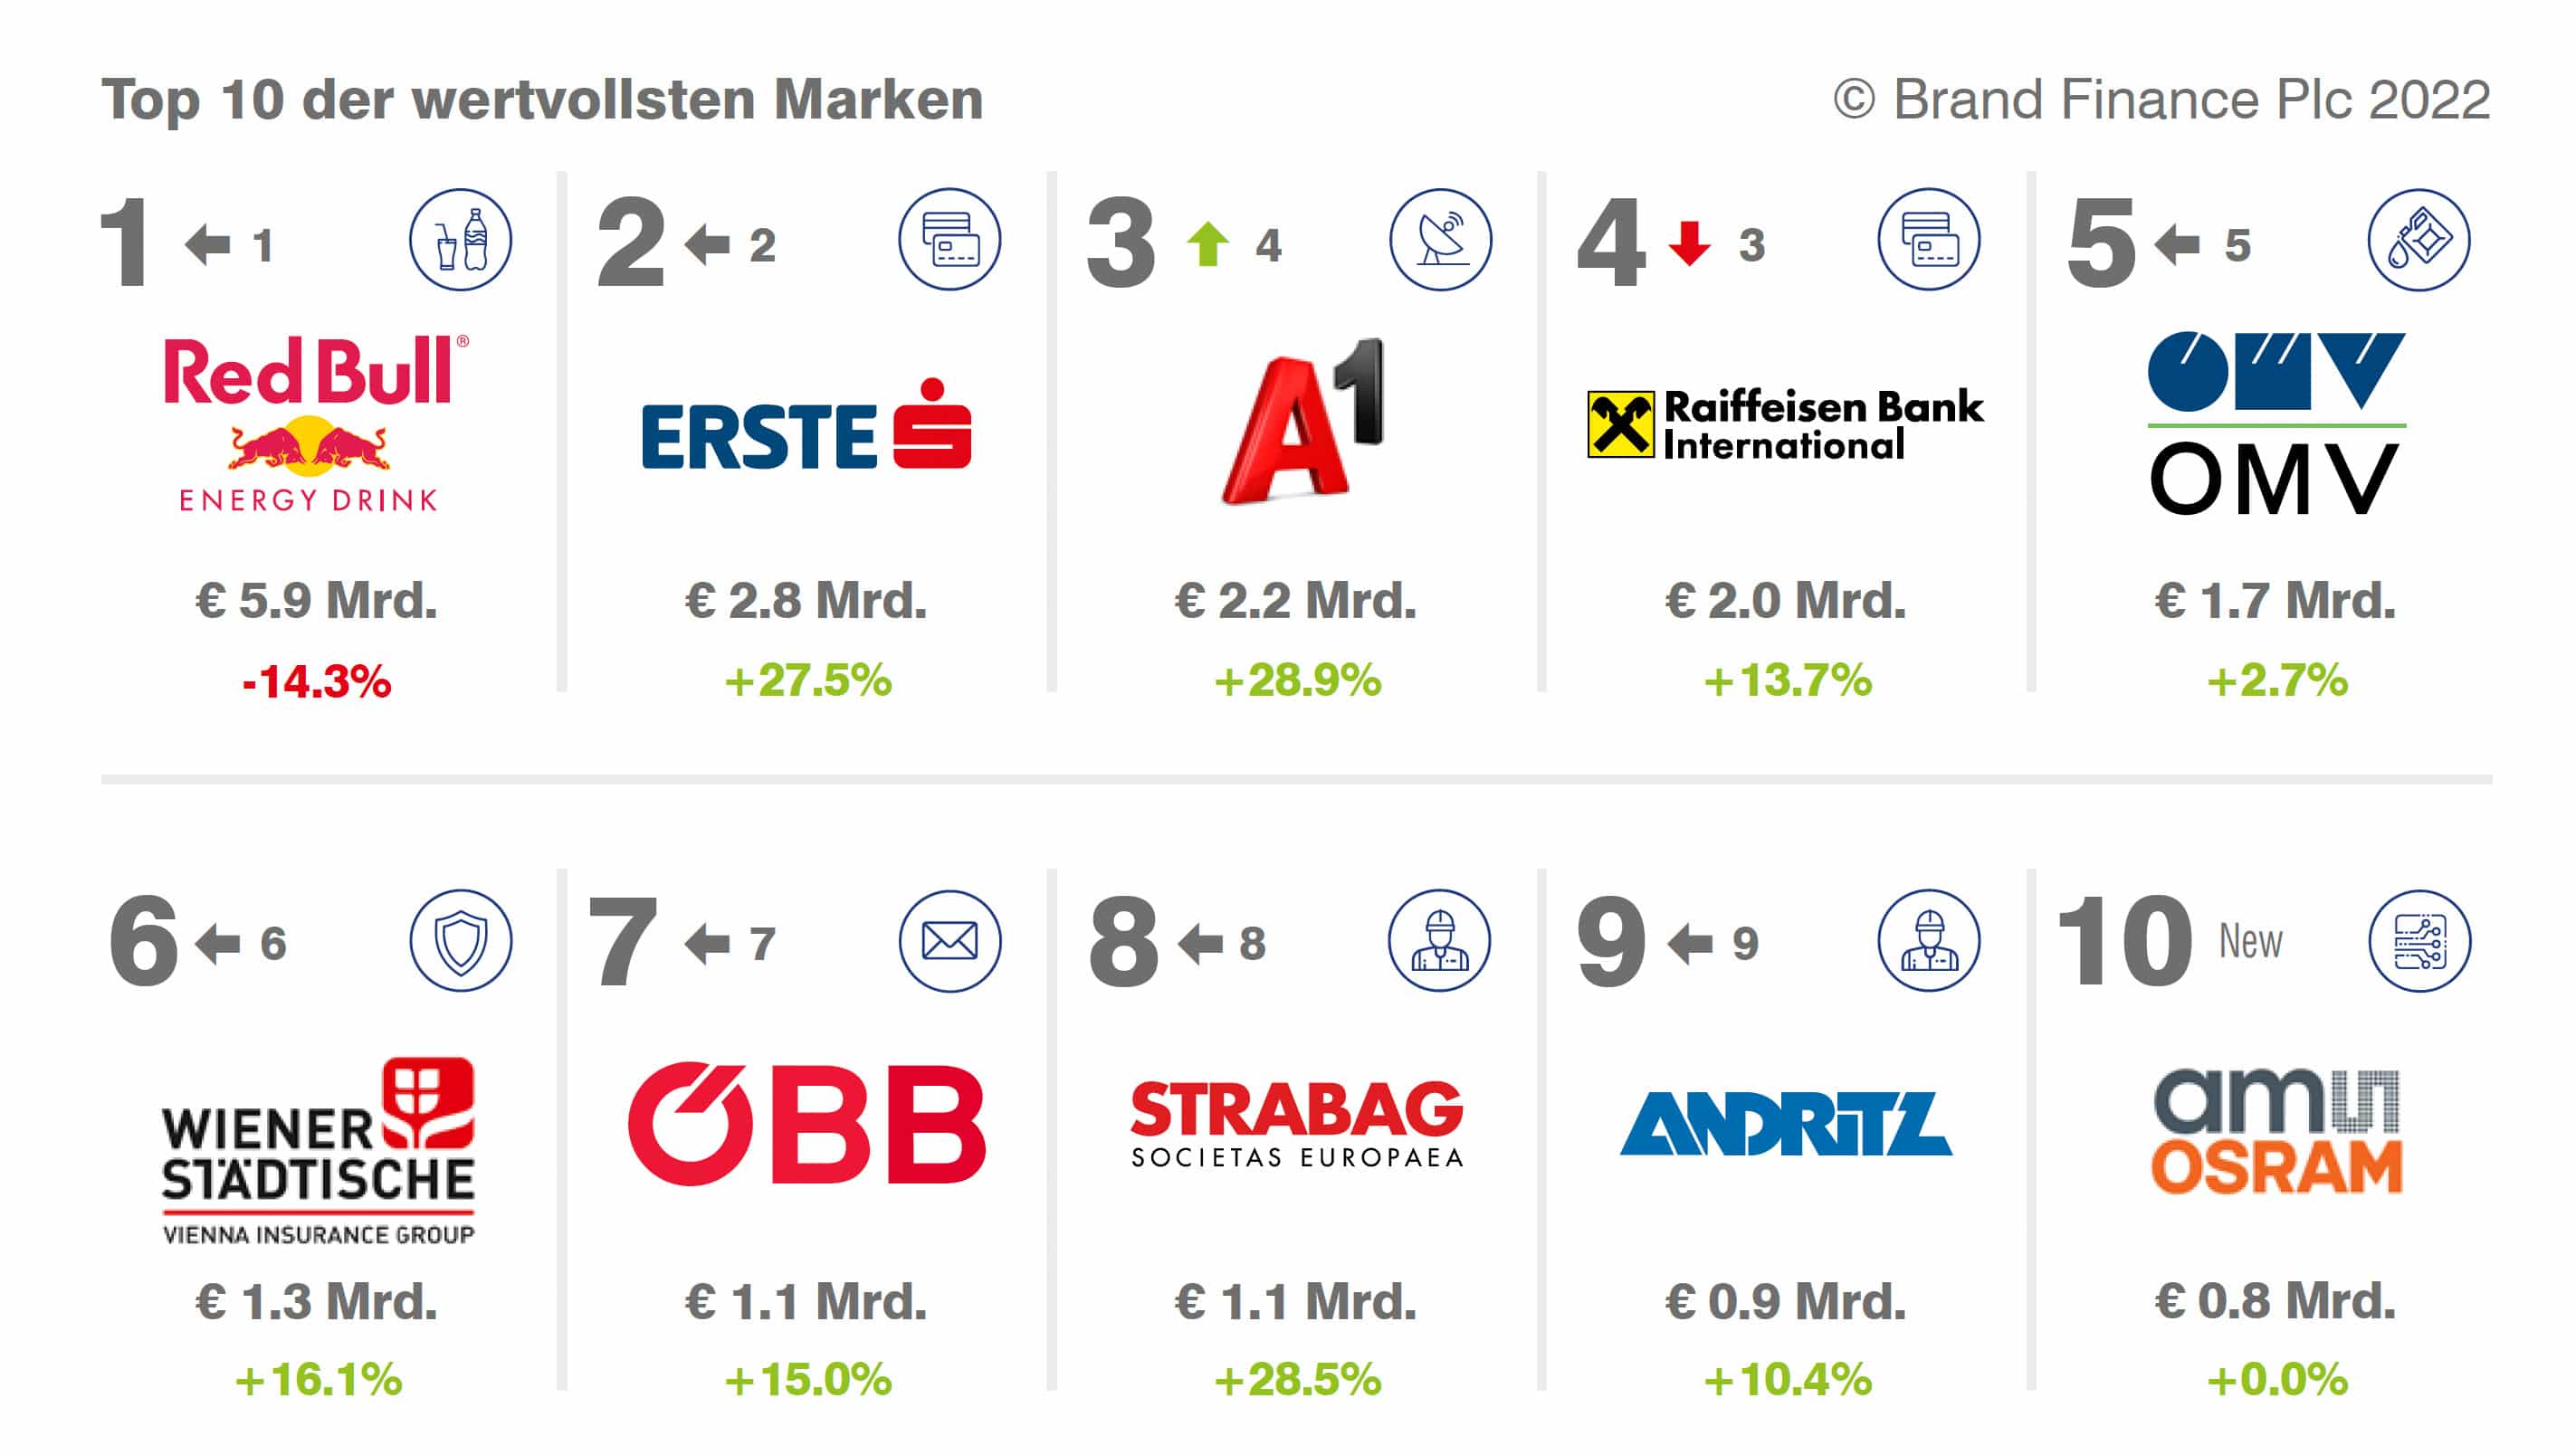 Red Bull und Erste Bank: Top-Marken Österreichs